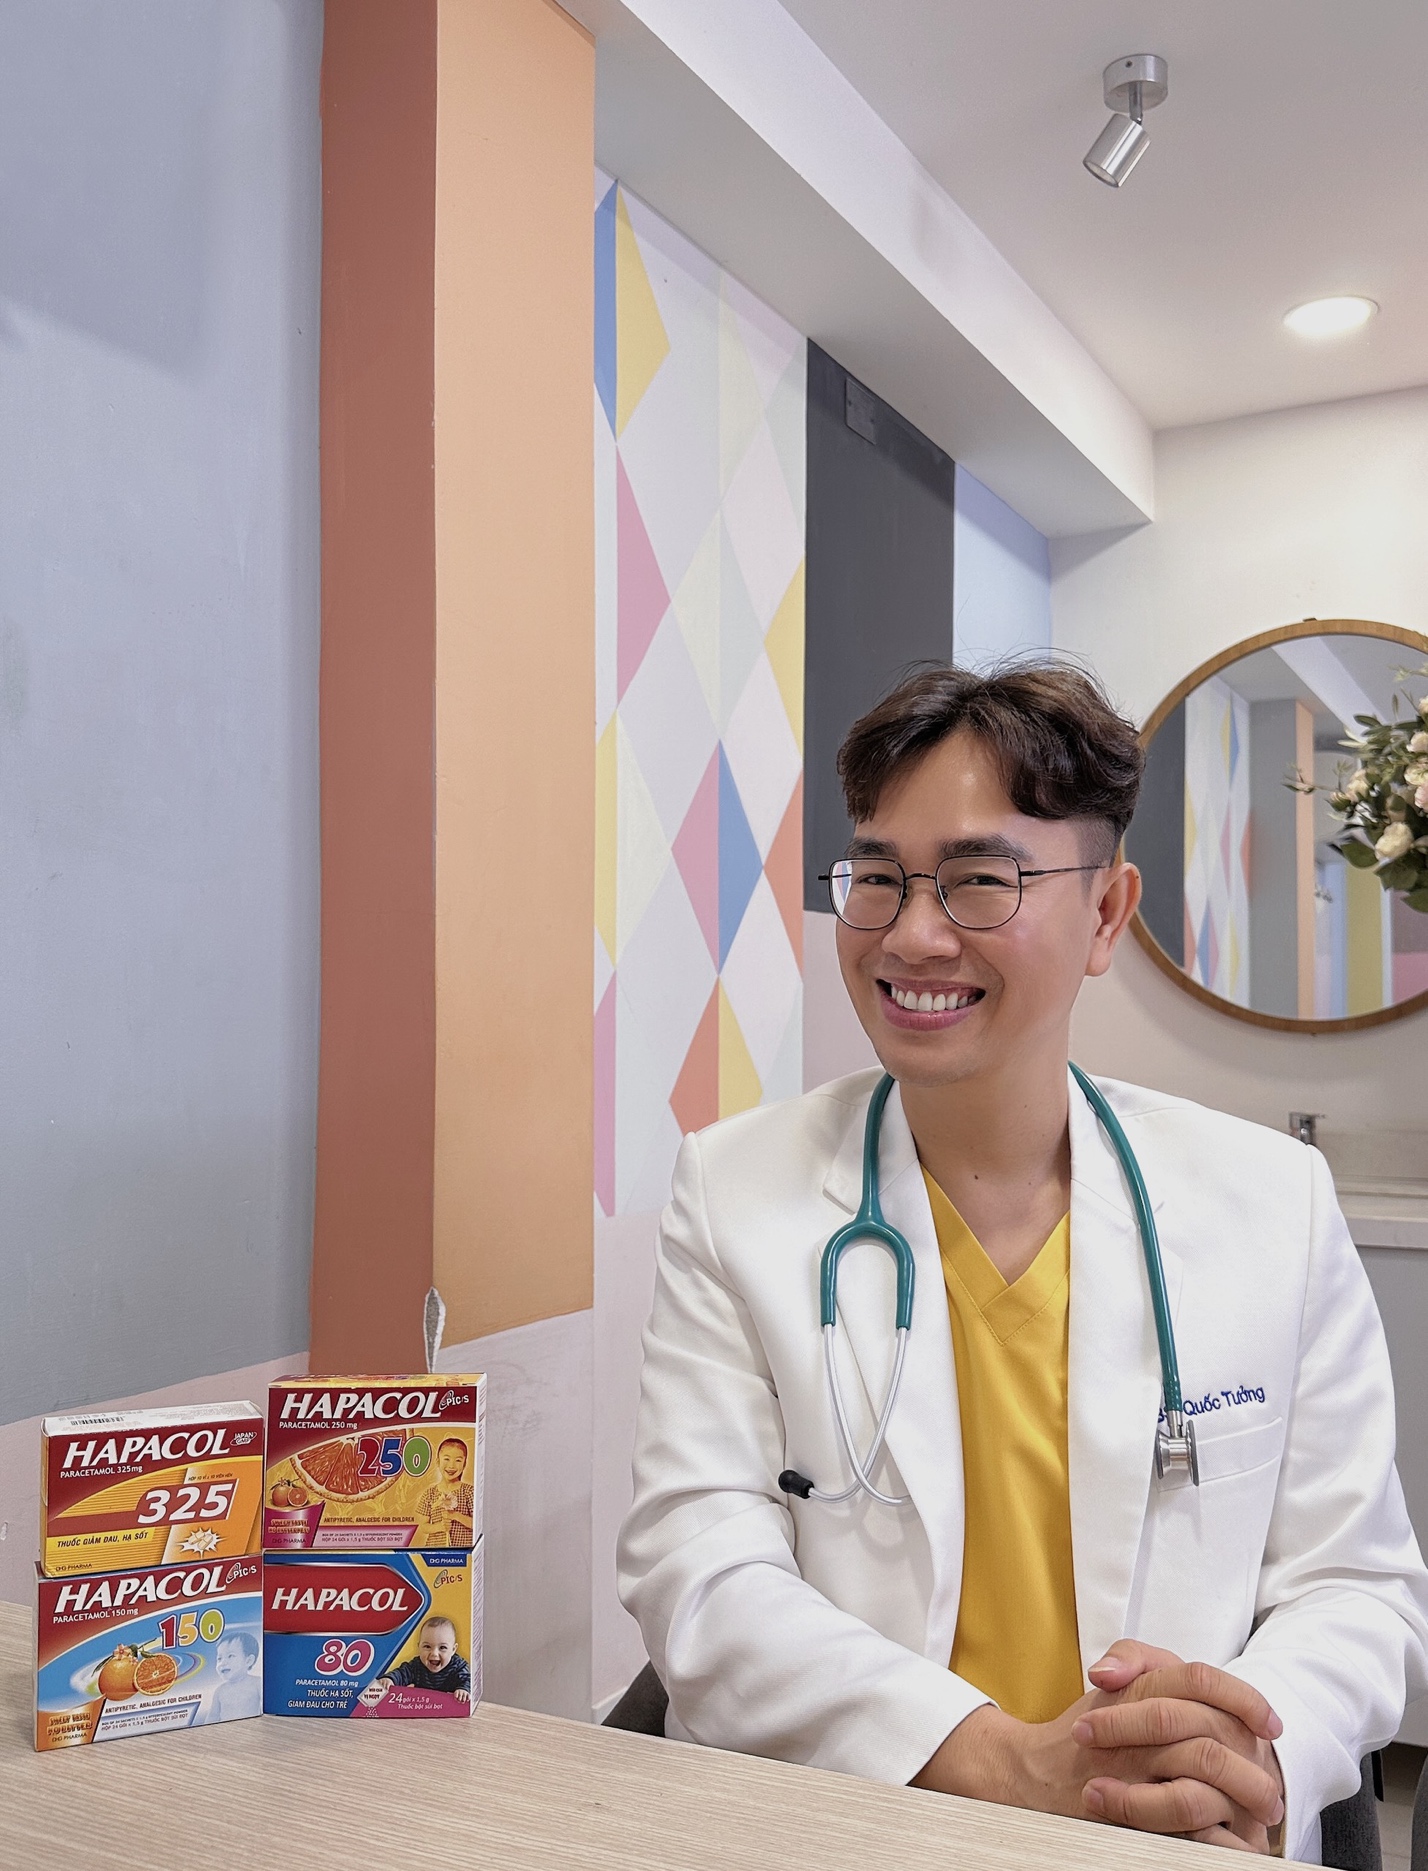 20 năm Hapacol đồng hành cùng y bác sĩ chăm sóc sức khoẻ người Việt - 4